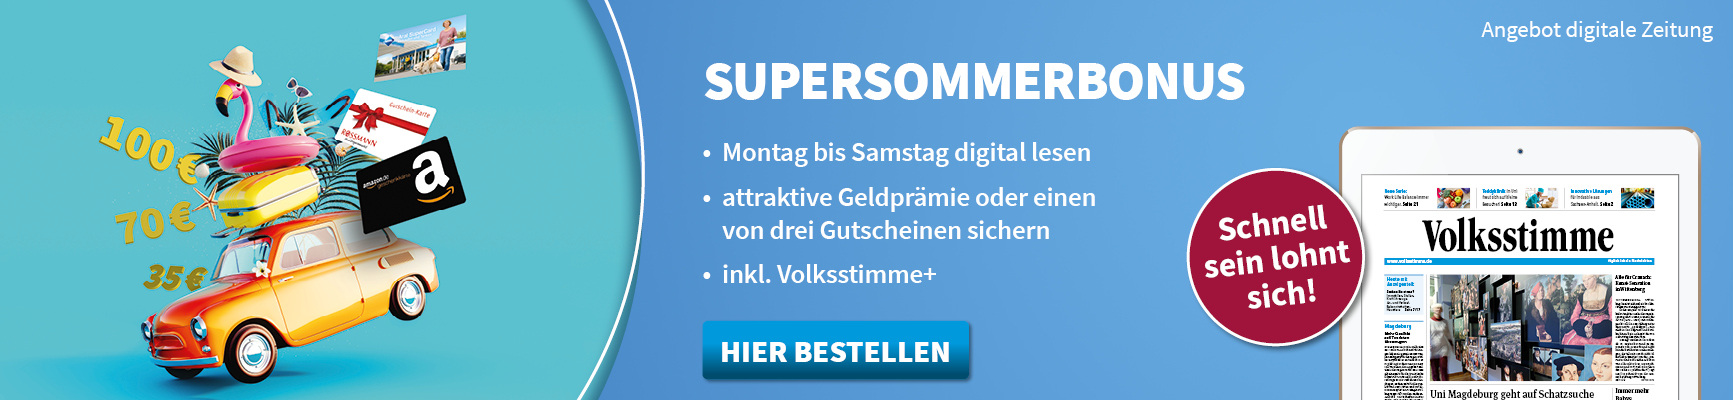 Supersommerbonus - Jetzt bis 14.07. bestellen und 70 € sichern!